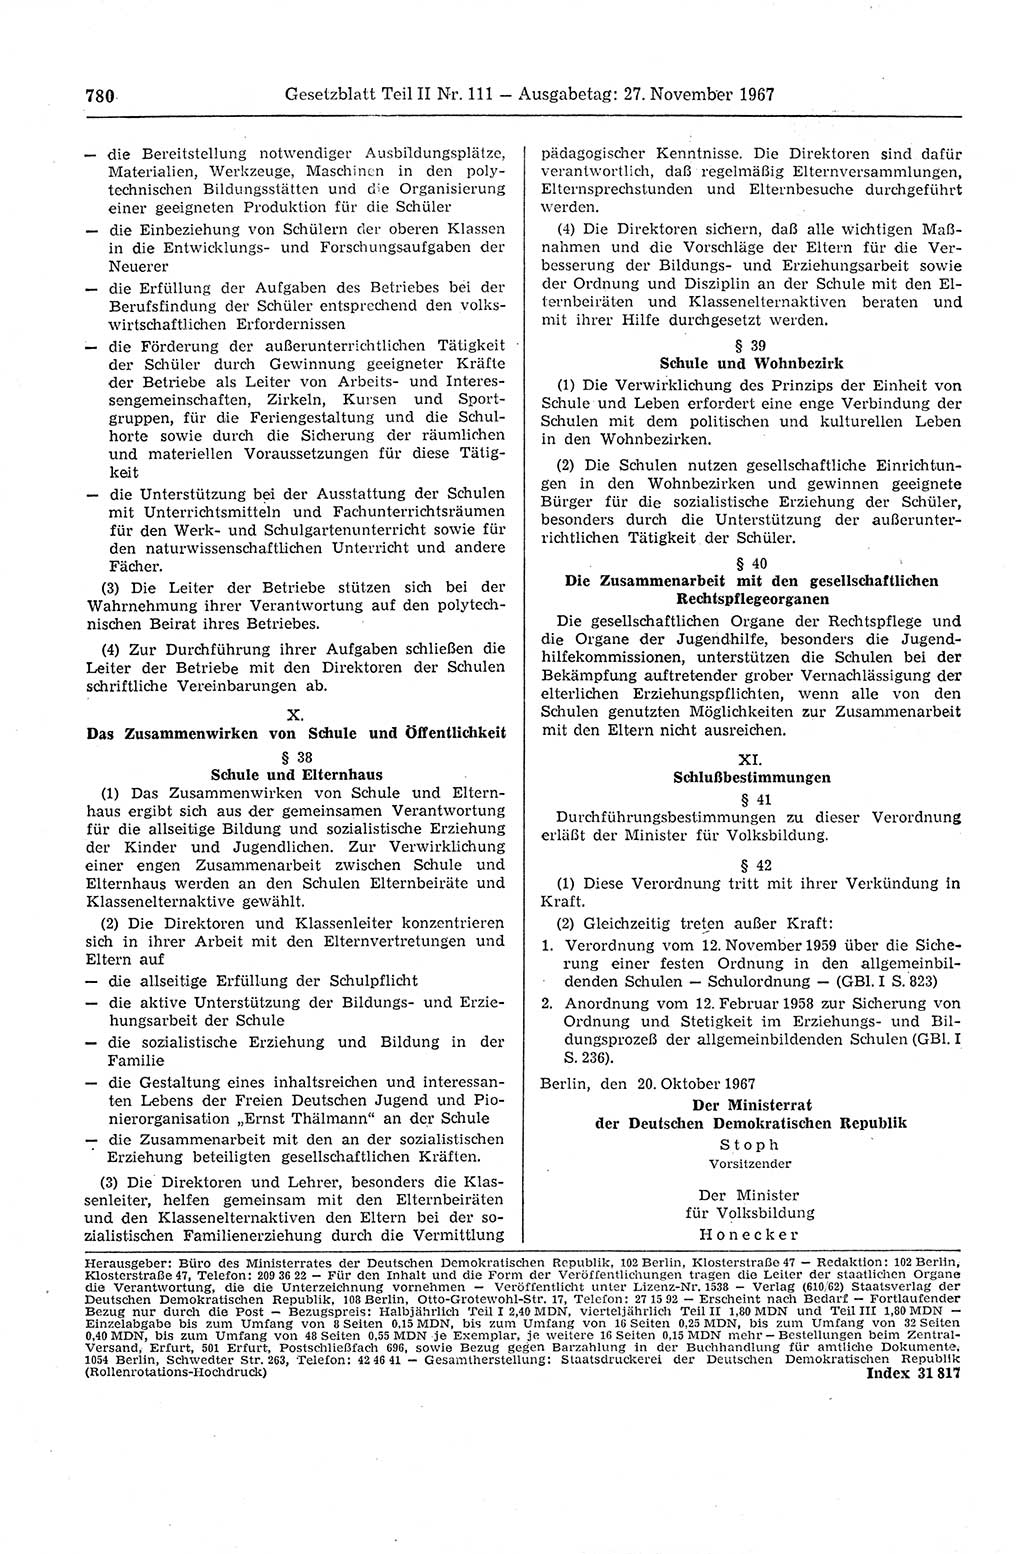 Gesetzblatt (GBl.) der Deutschen Demokratischen Republik (DDR) Teil ⅠⅠ 1967, Seite 780 (GBl. DDR ⅠⅠ 1967, S. 780)